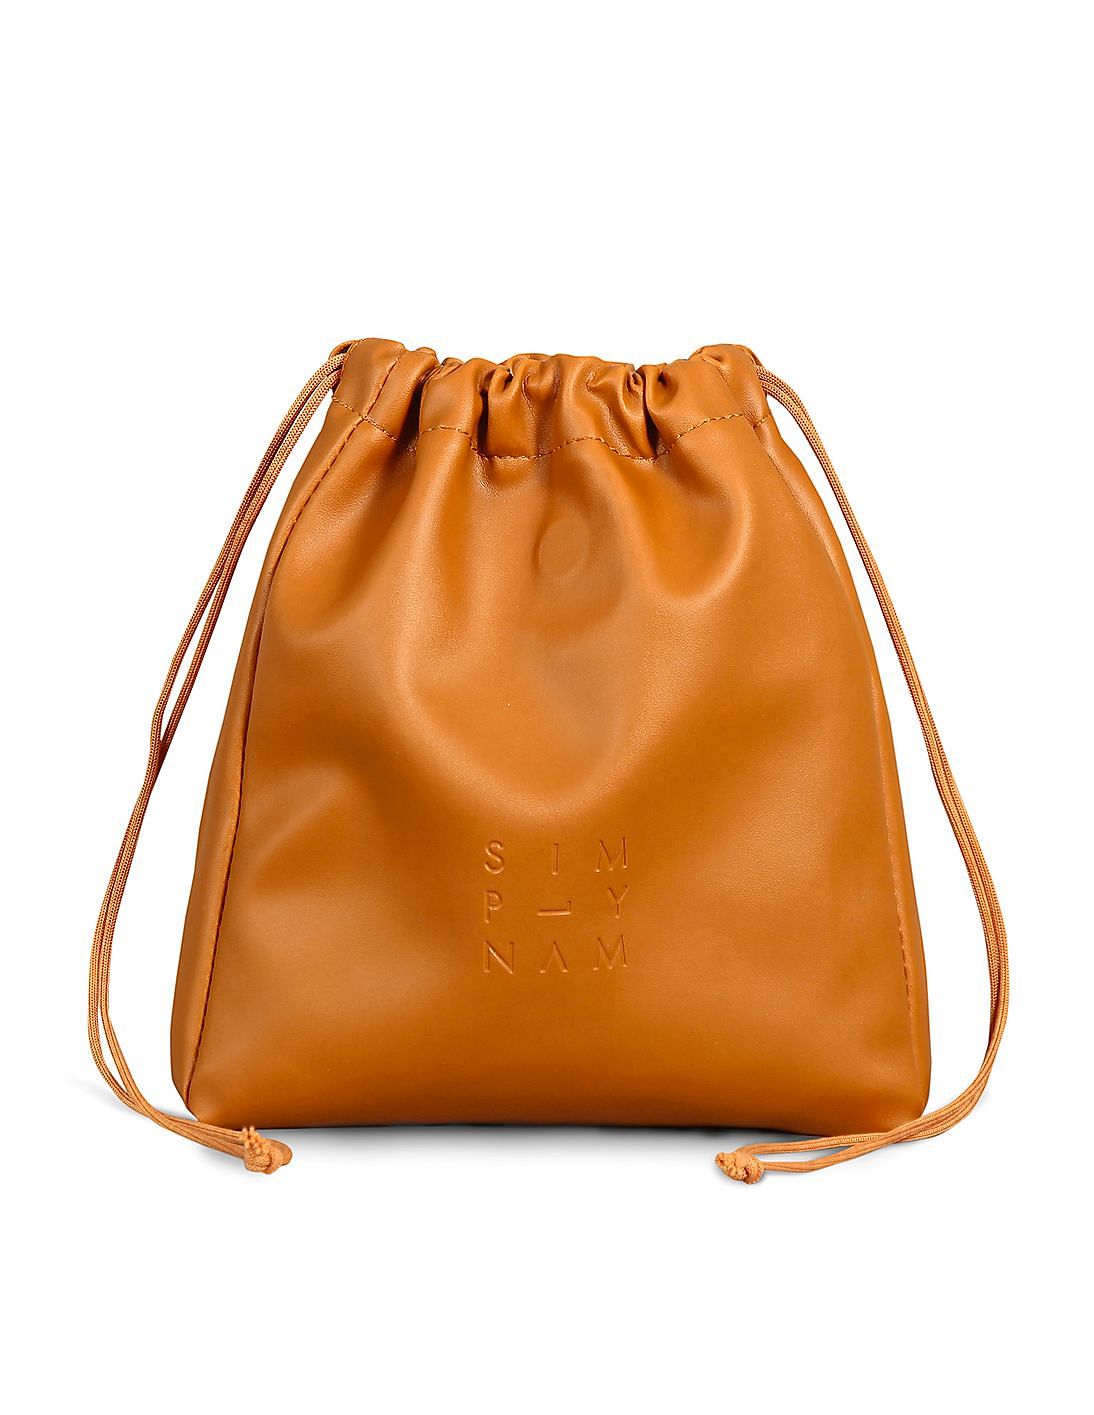 Buy Simply Nam Everyday Essentials Beauty Bucket Bag - NNNOW.com